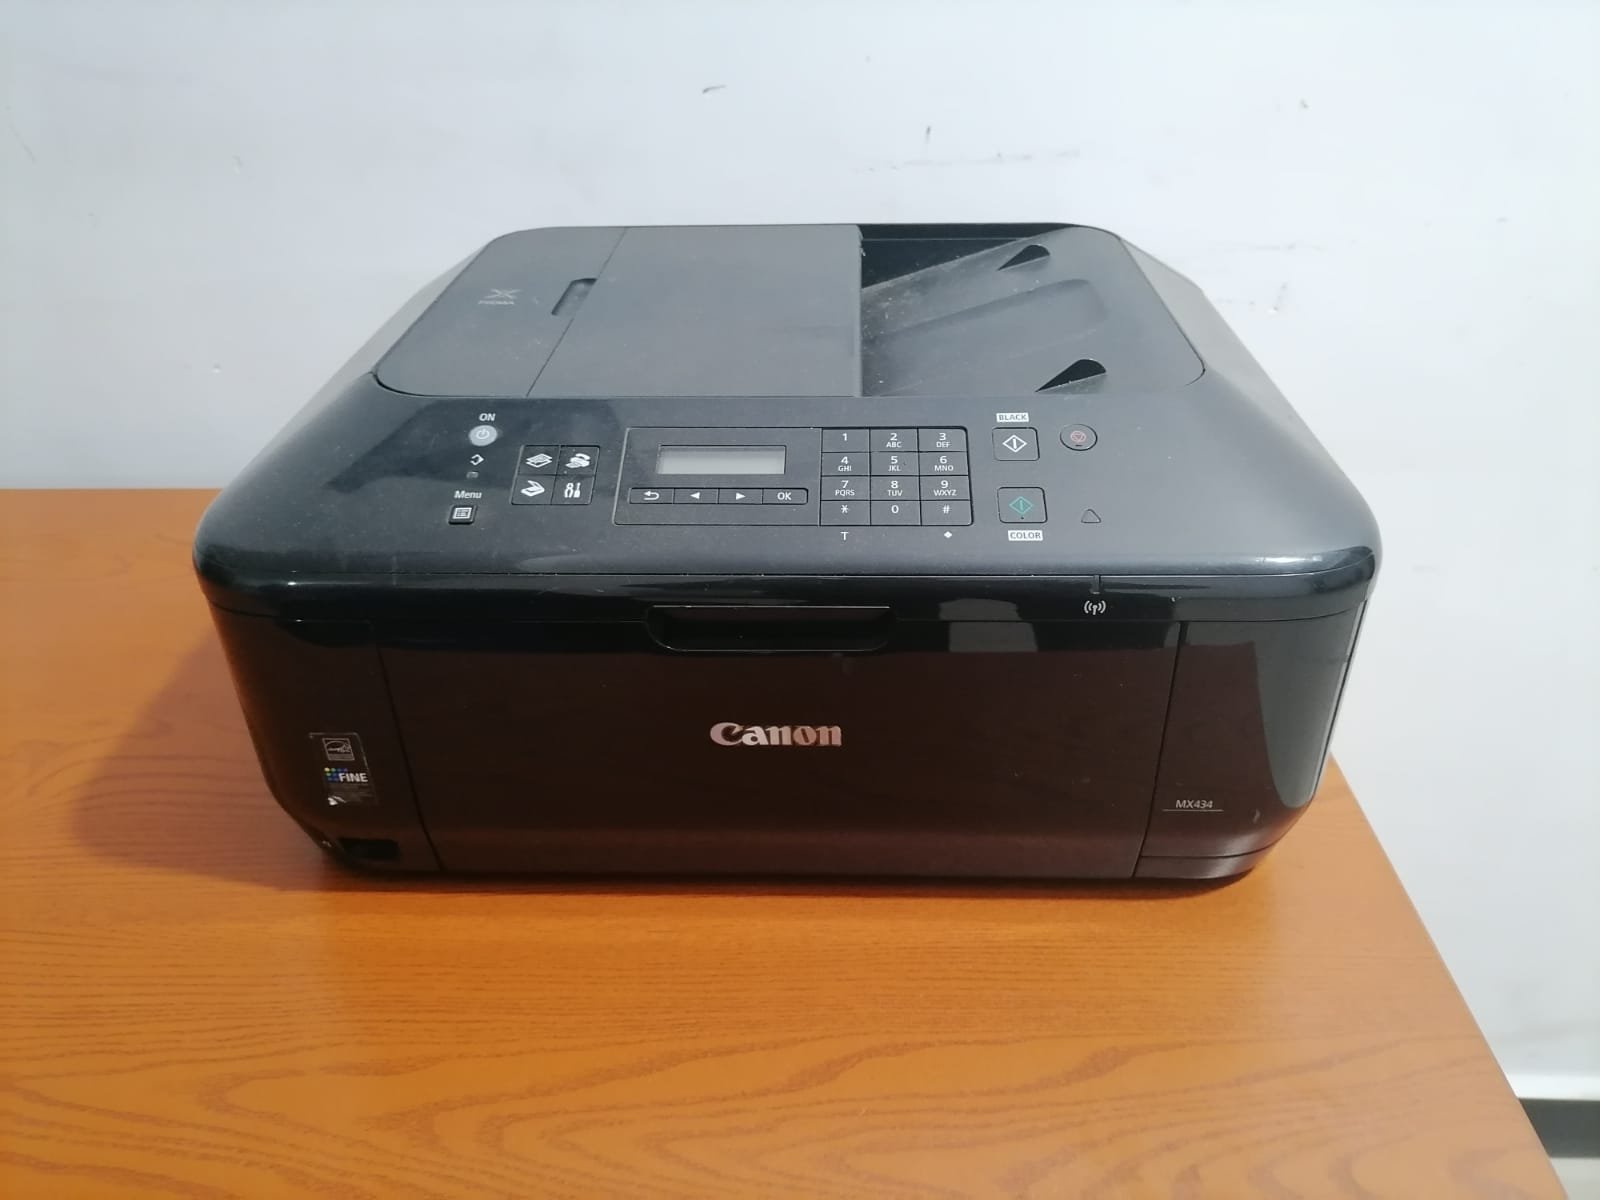 Cannon Wi-Fi Color Printer